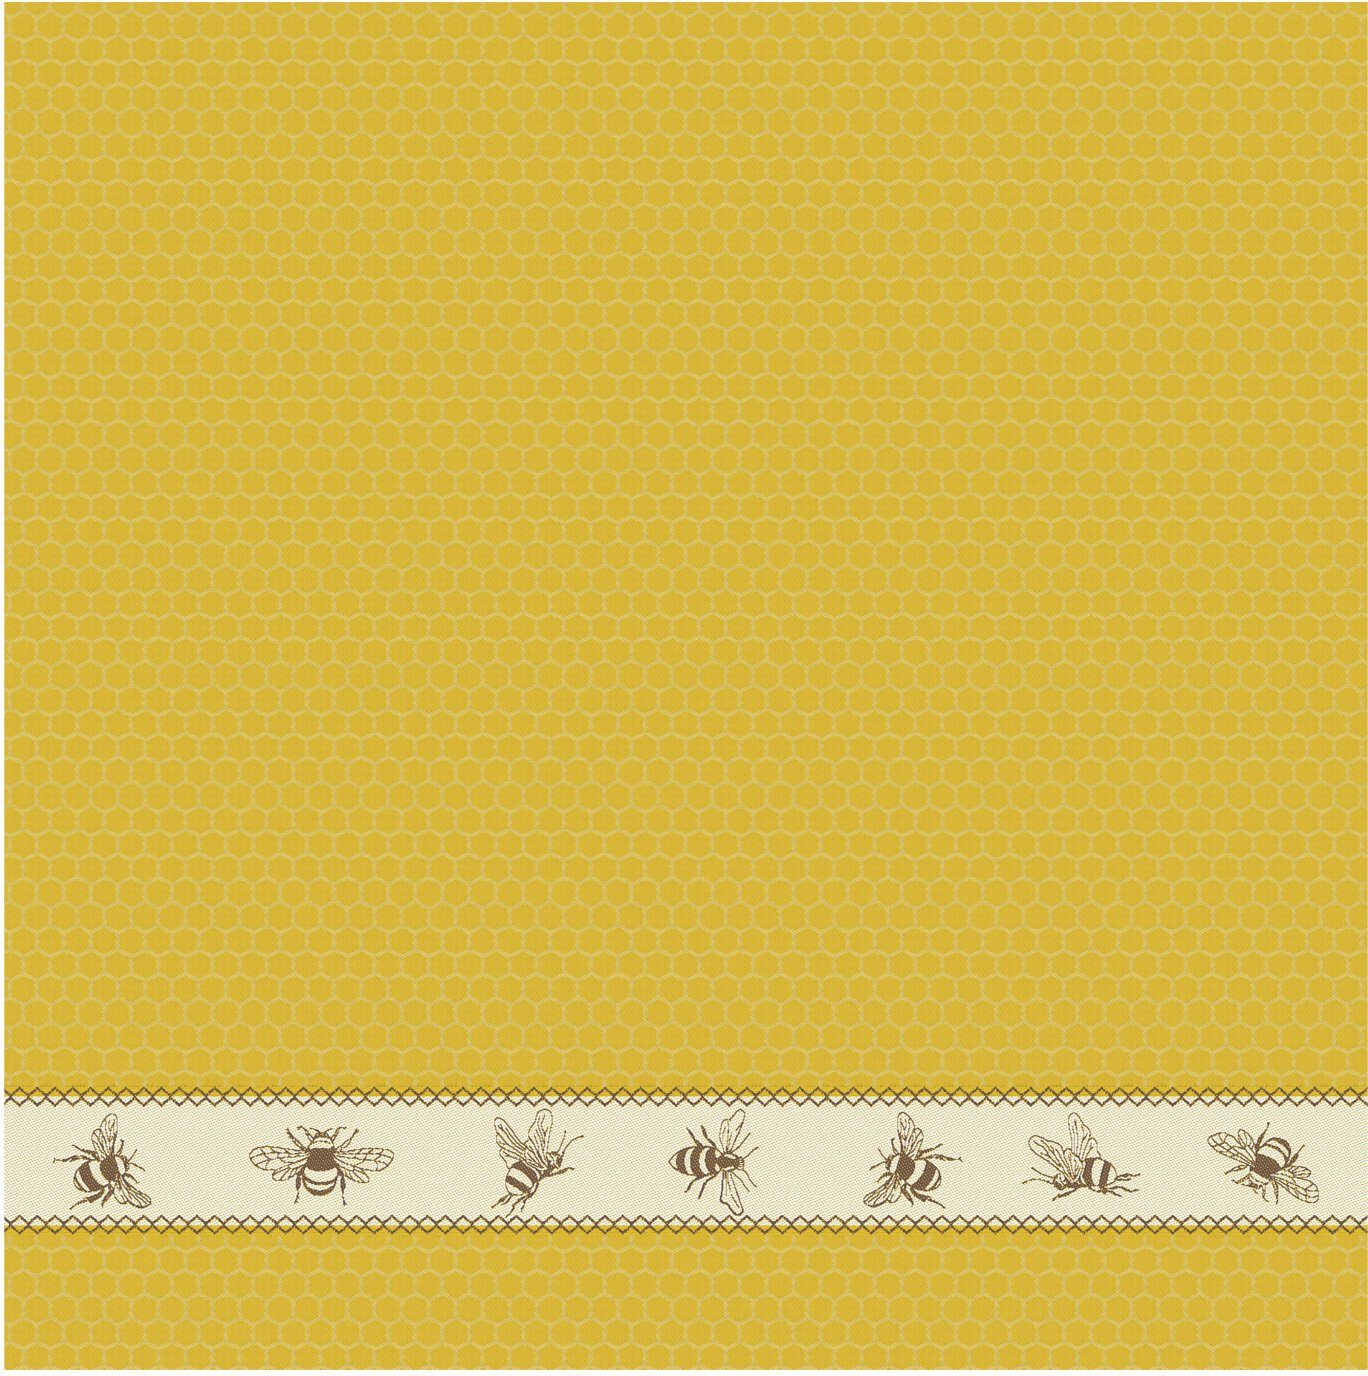 Bees, + aus 2x 4-tlg., gelb/naturweiß/braun Combi-Set: (Set, Geschirrtuch) Küchentuch Geschirrtuch bestehend DDDDD 2x